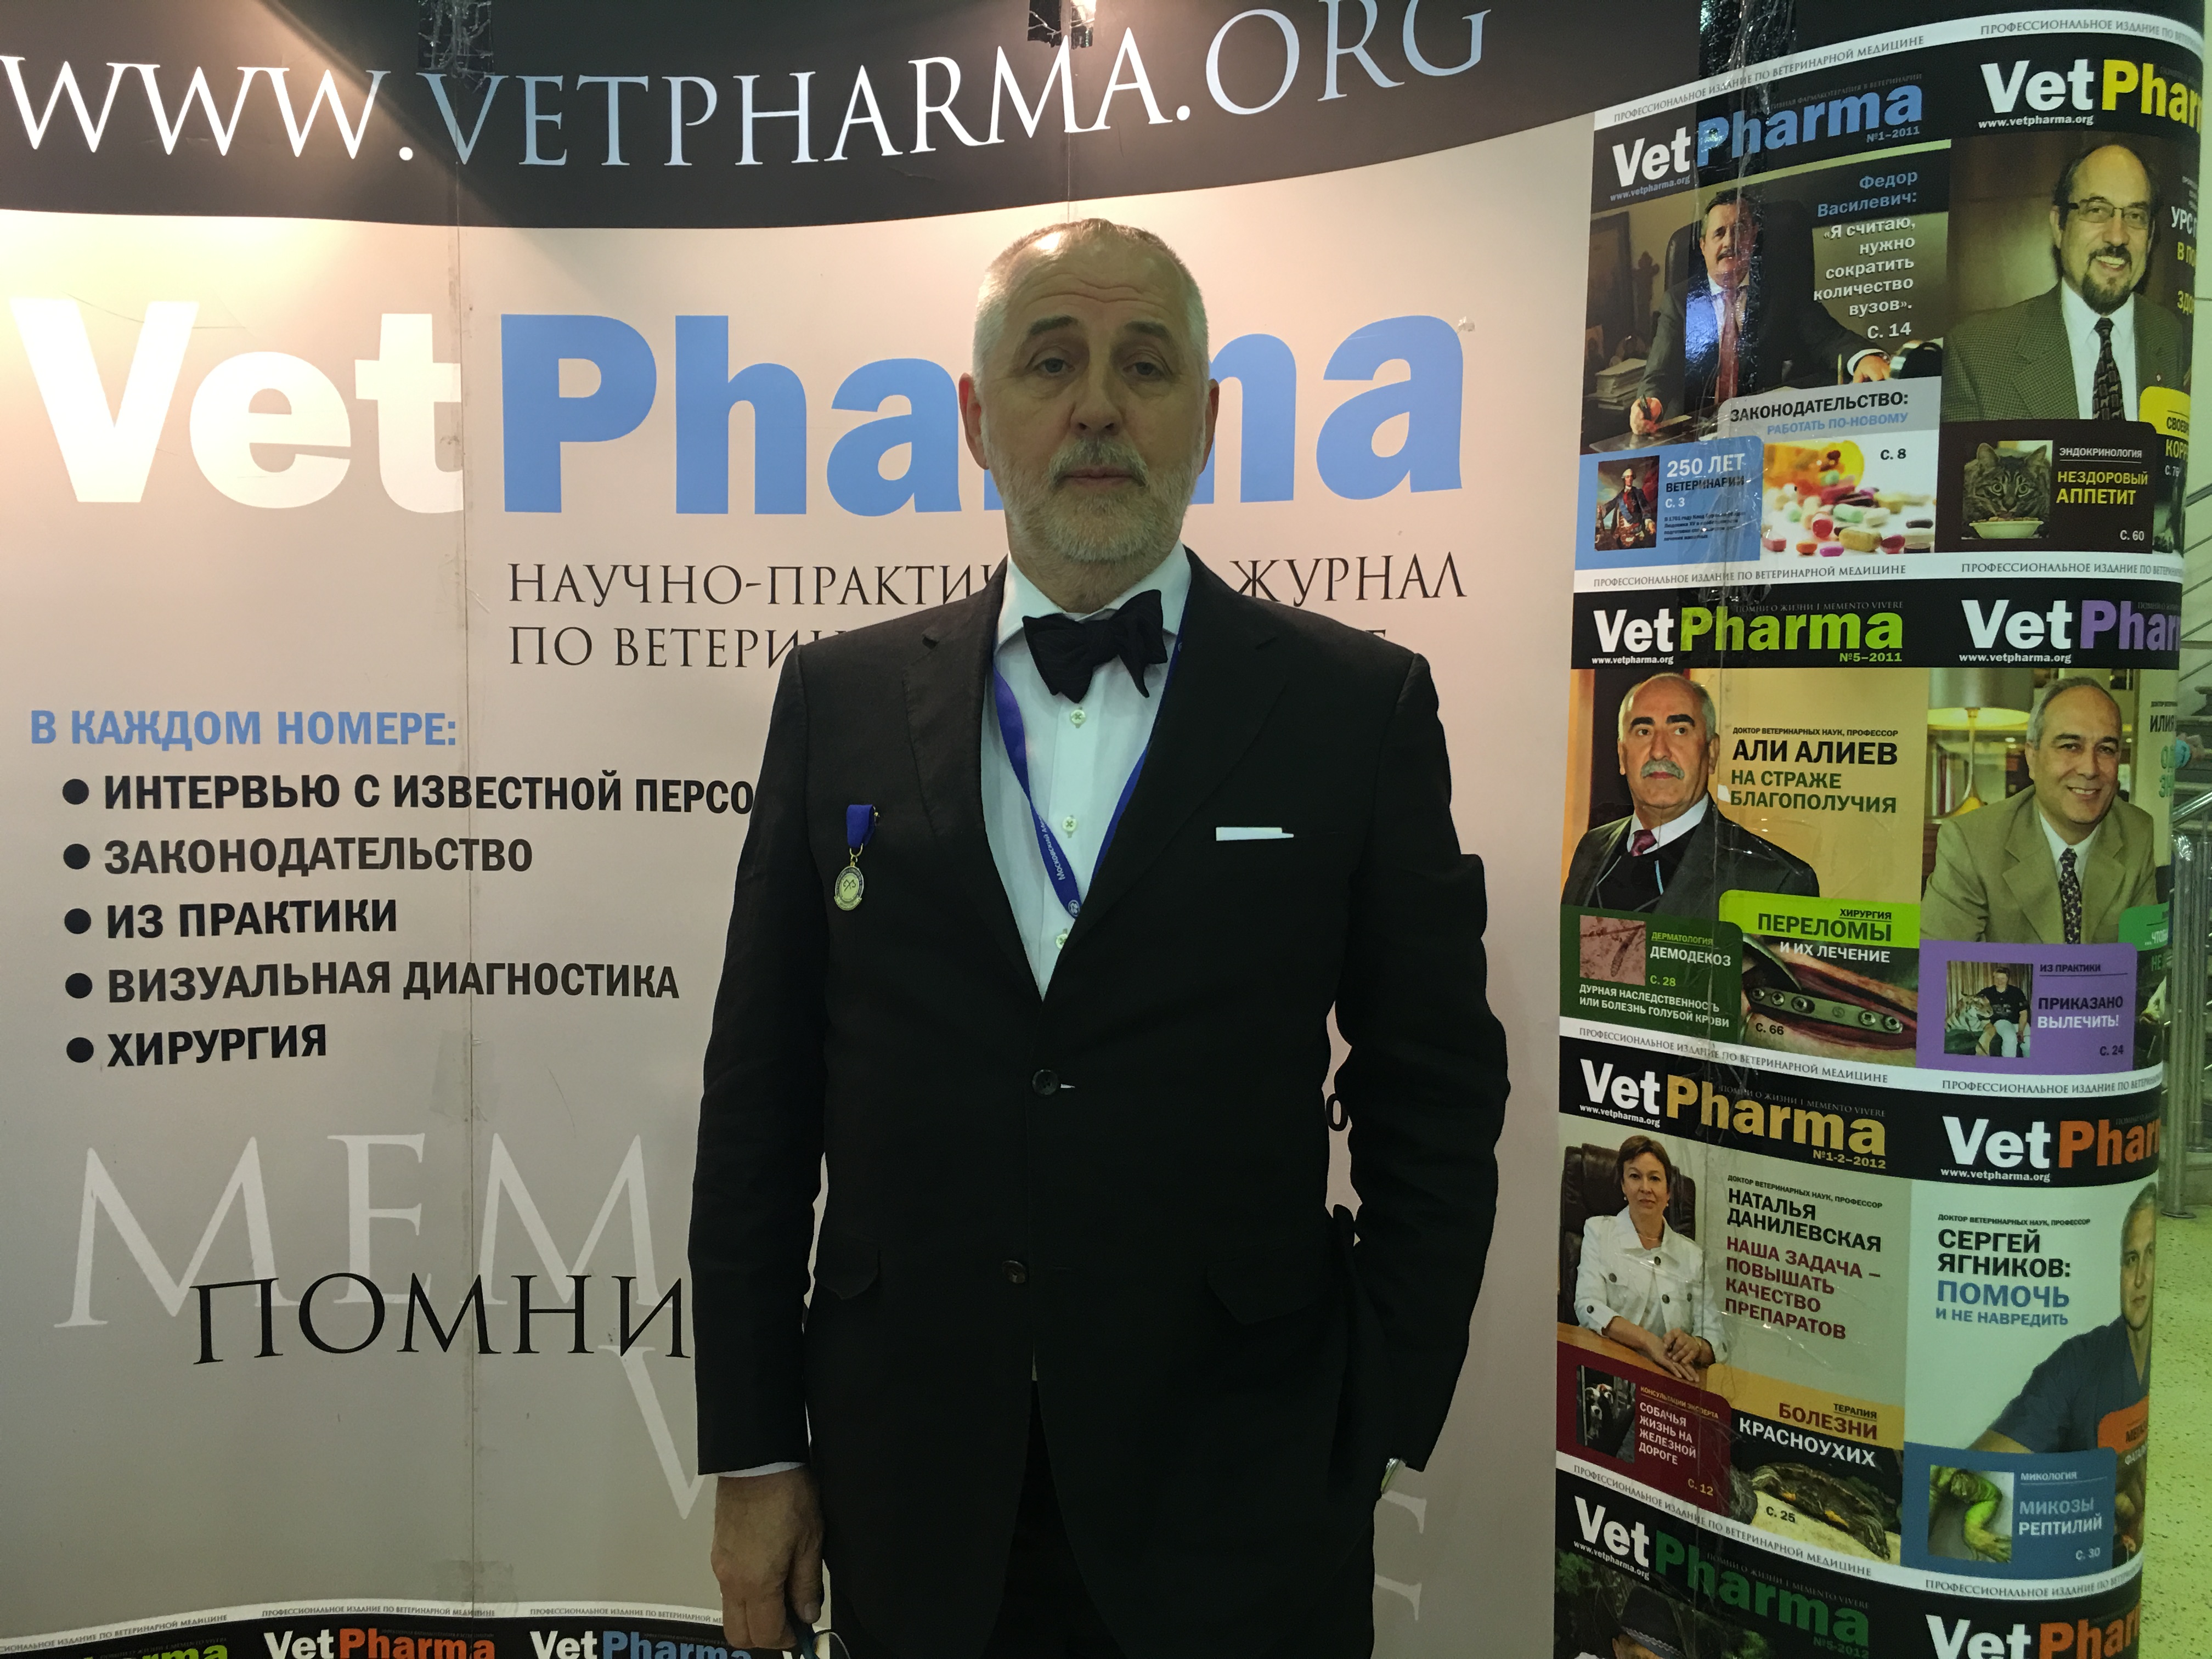 Сергей Владимирович Середа, президент Ассоциации практикующих ветеринарных врачей